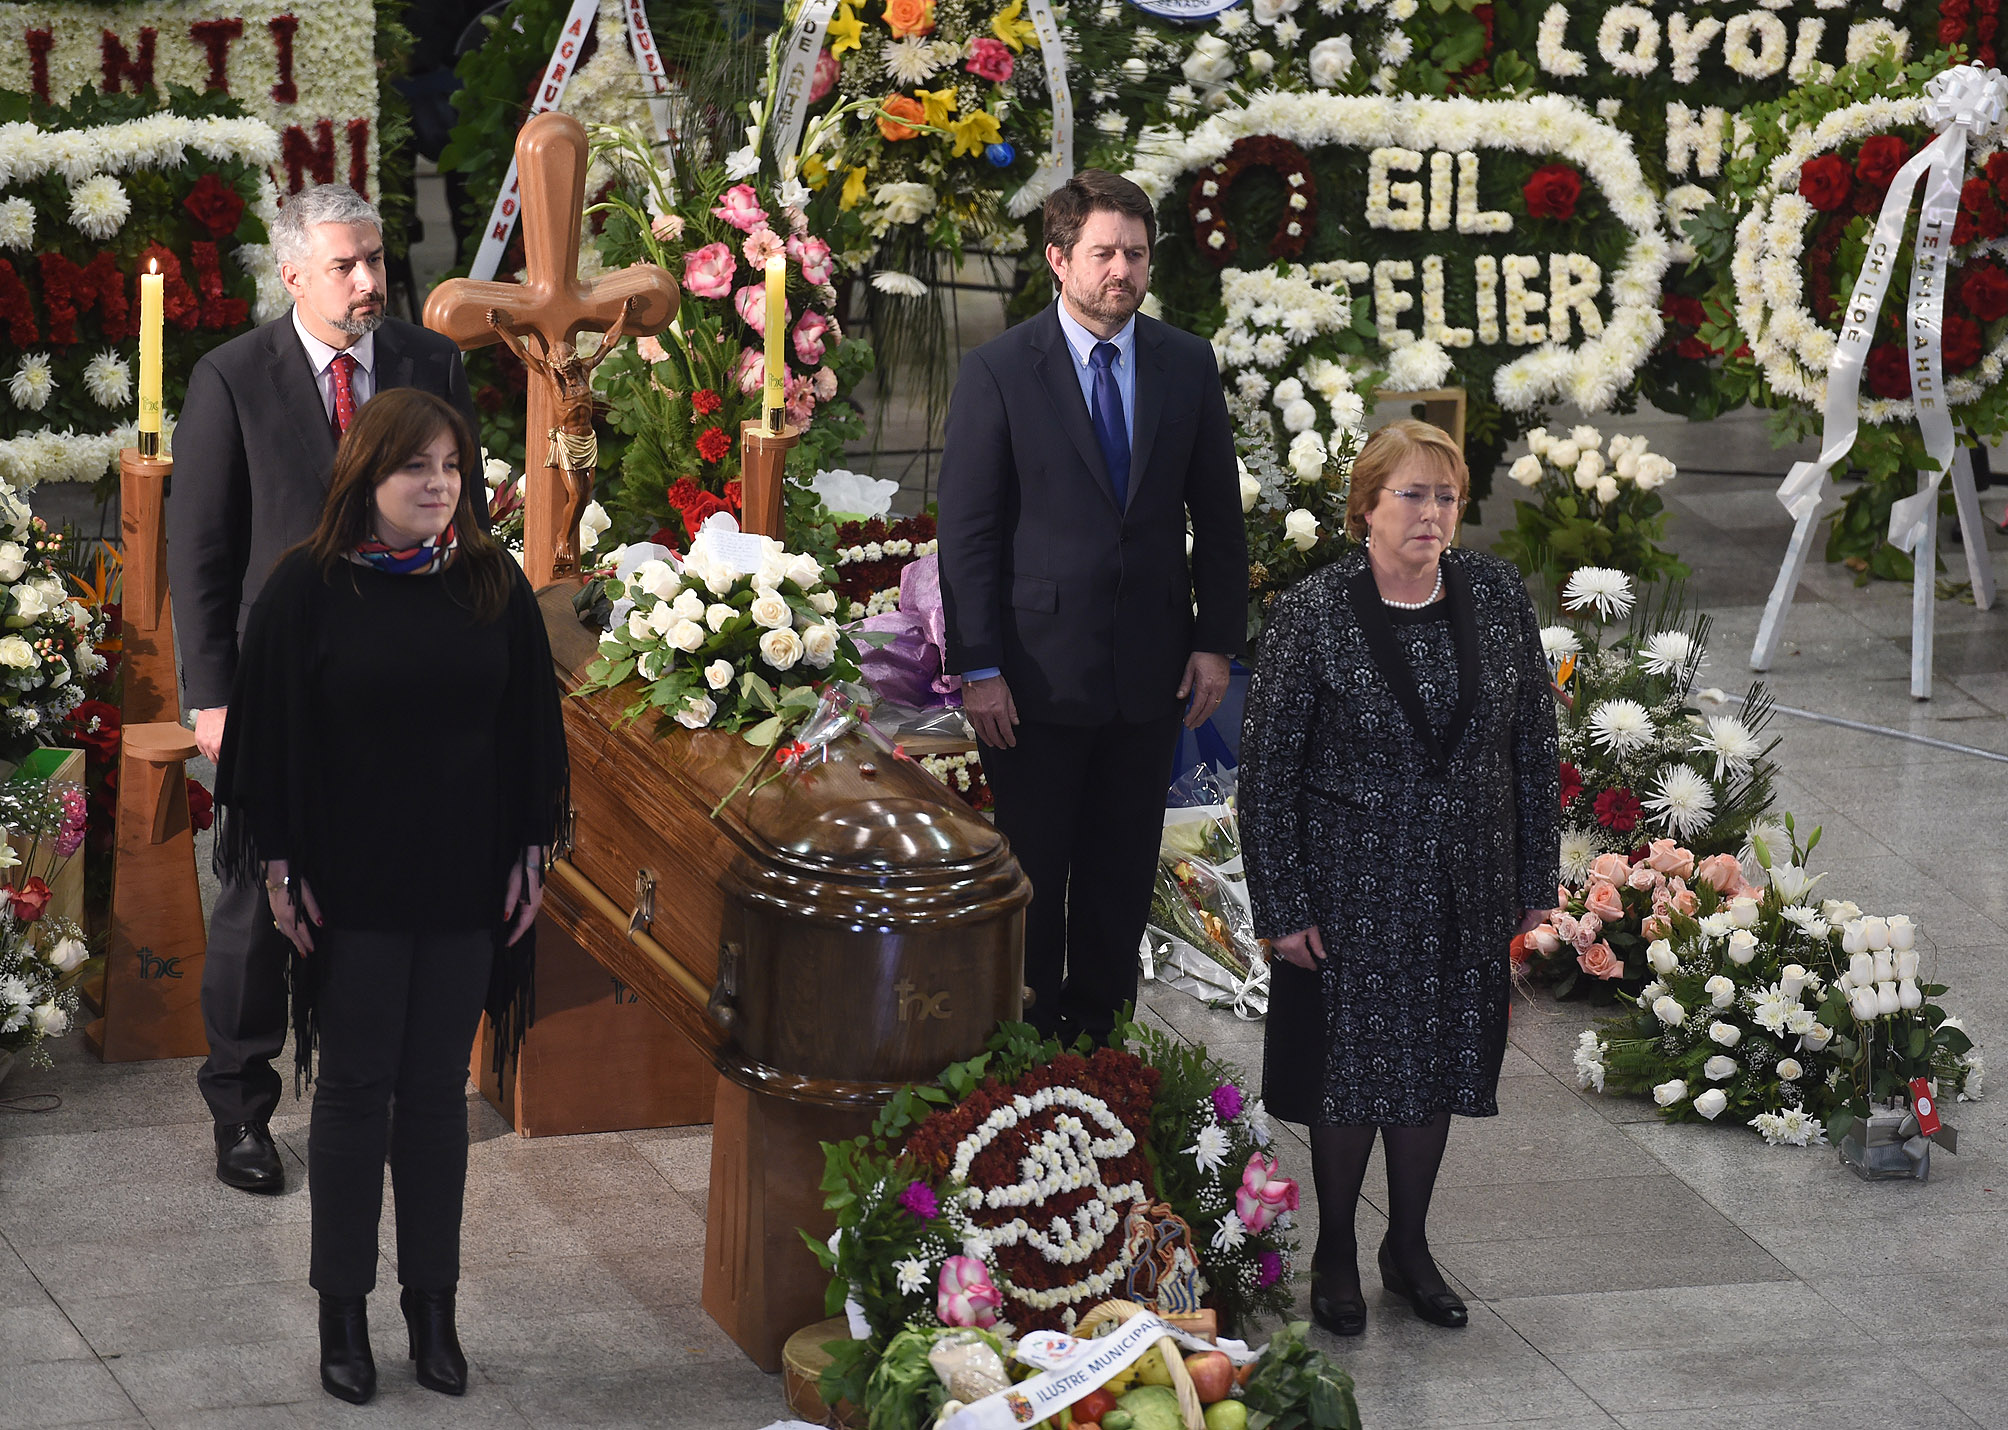 Velatorio de Loyola, con la presencia de la presidenta Michelle Bachelet.